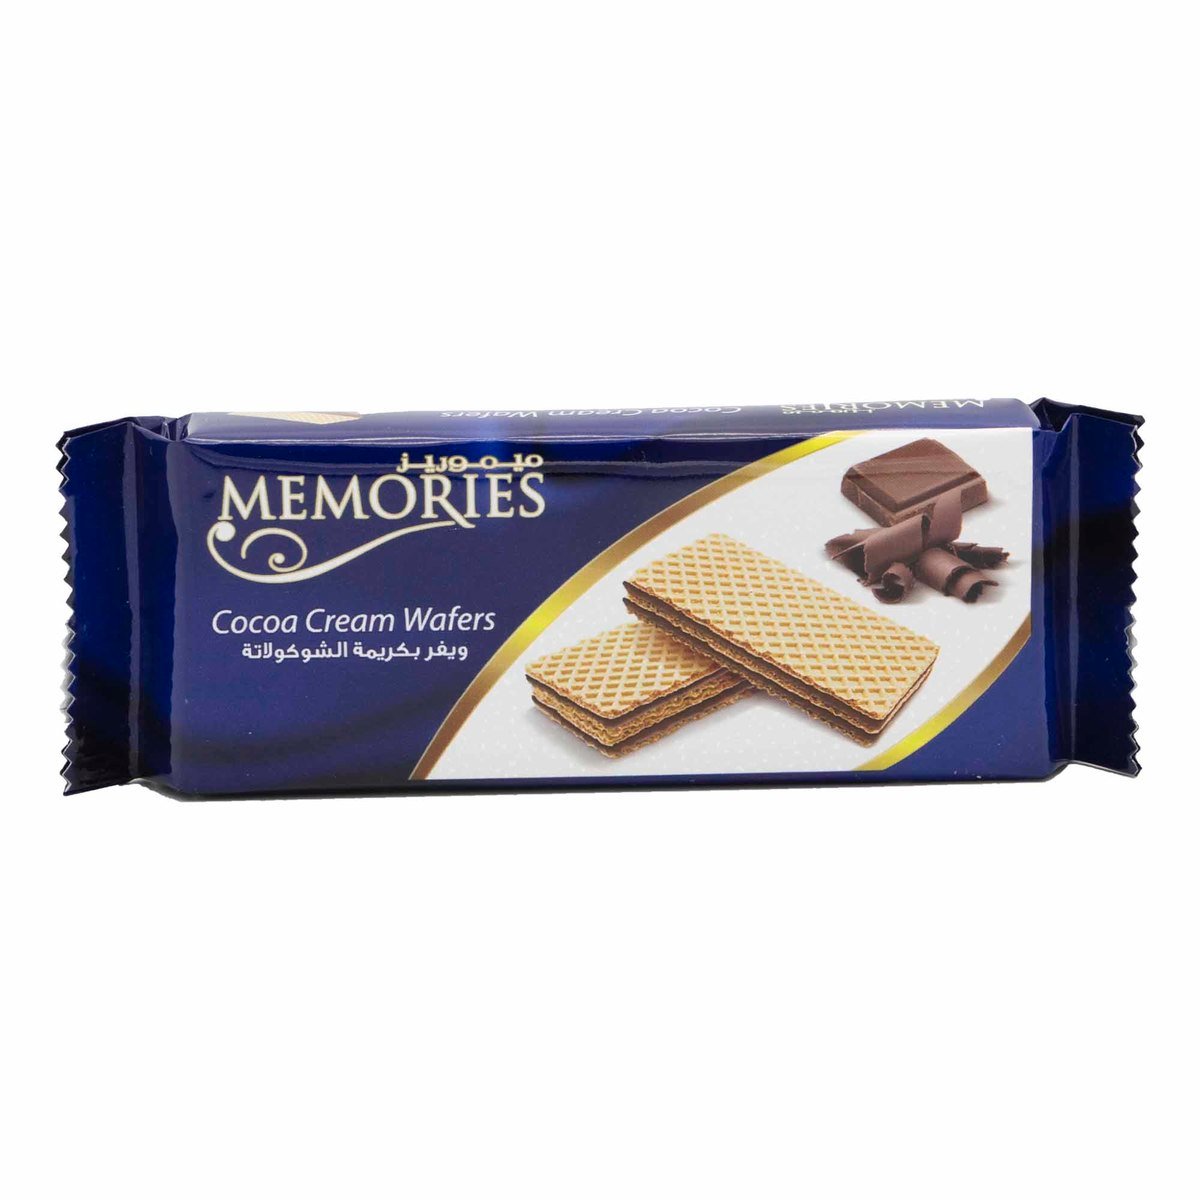 Memories Cocoa Cream Wafers 40g